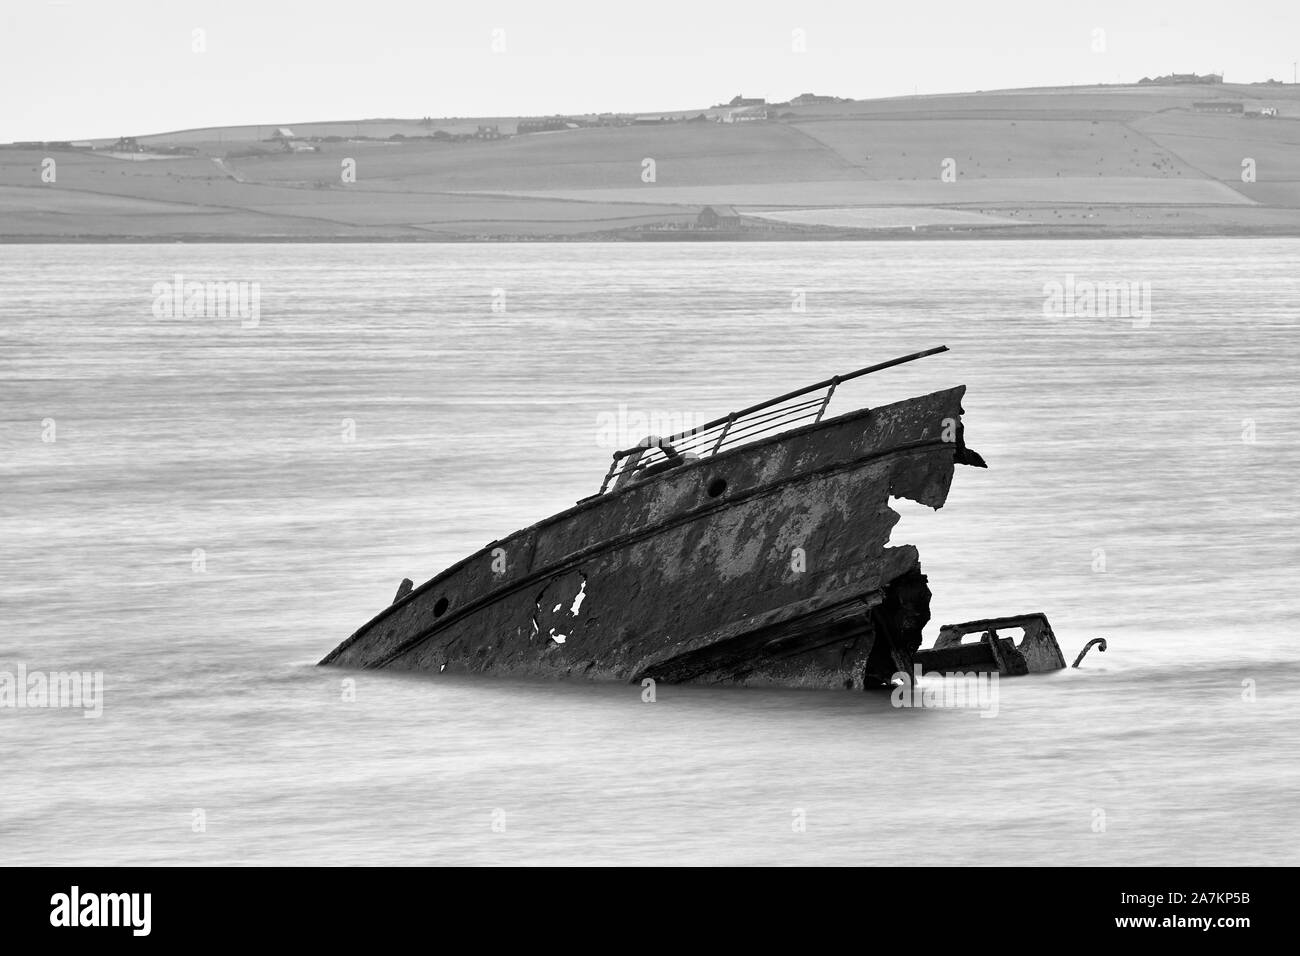 Le SS blockship dans le son de Reginald de Weddell, Scapa Flow, off, Burray, Orkney Ecosse Banque D'Images